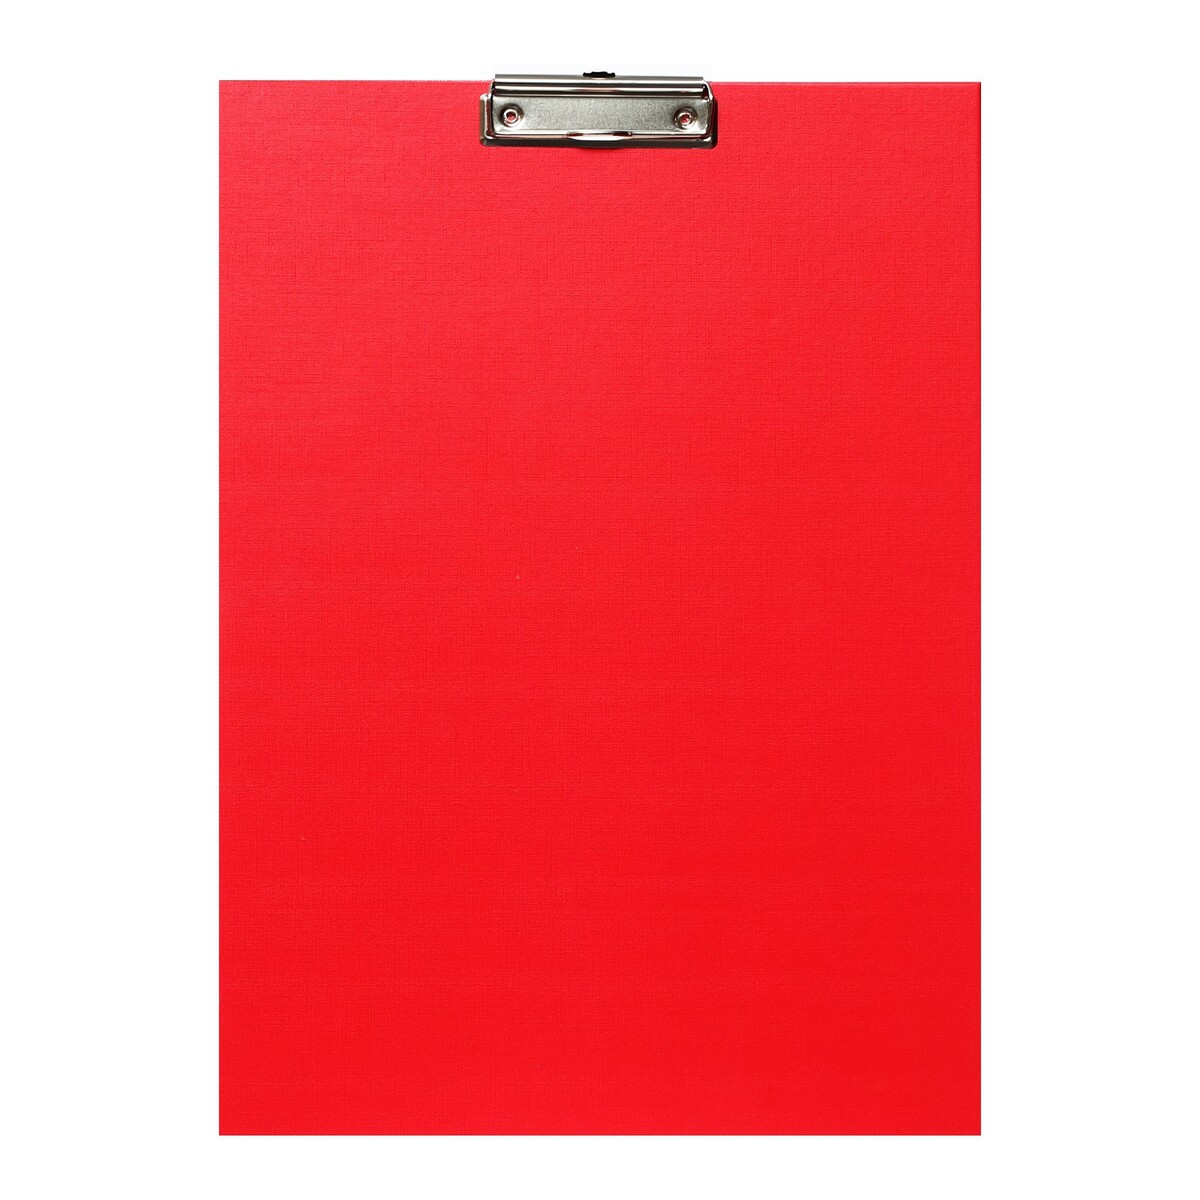 Планшет с зажимом а3, 420 x 320 мм, покрыт высококачественным бумвинилом, красный (клипборд) планшет с зажимом формат а4 мдф 3мм горизонтальный